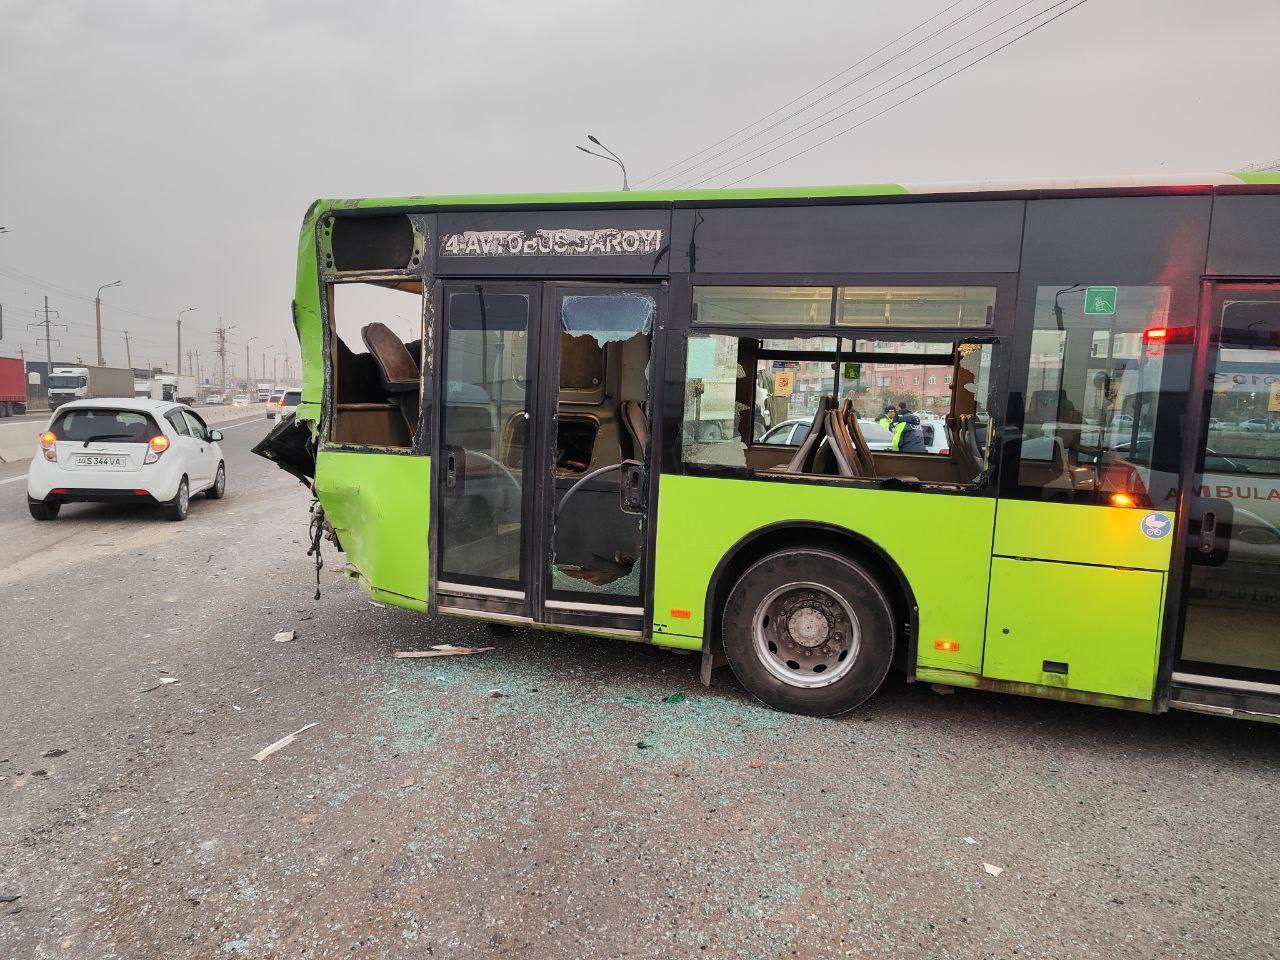 Четверо пострадавших: Выяснились подробности ДТП с участием автобуса и грузовика в Ташкенте